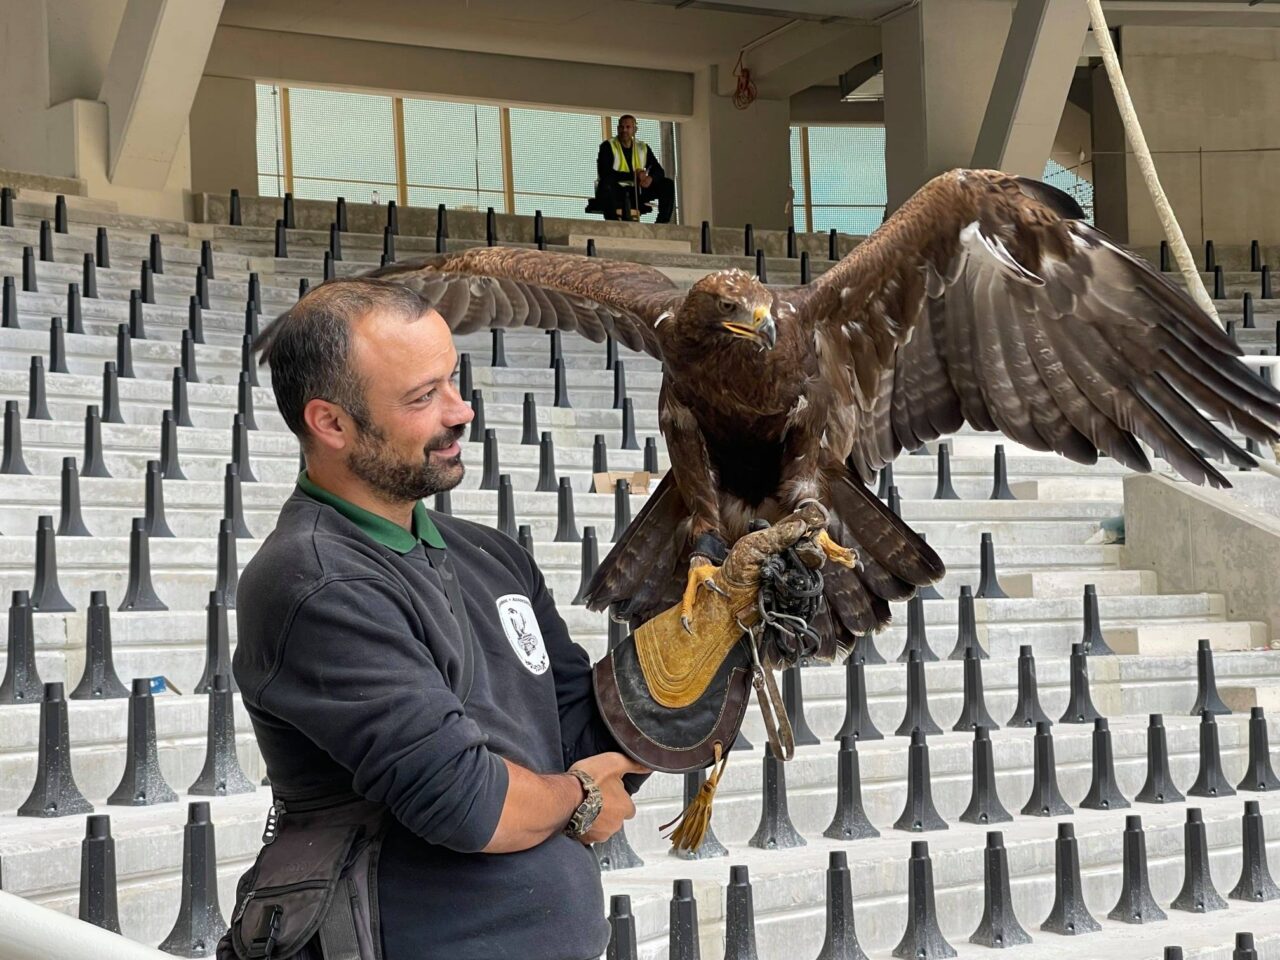 Με ανάρτησή της η ΠΑΕ ΑΕΚ ανέβασε φωτογραφίες από τον αετό που θα πετάει στο νέο γήπεδο της ομάδας όταν μετακομίσει στη Νέα Φιλαδέλφεια.